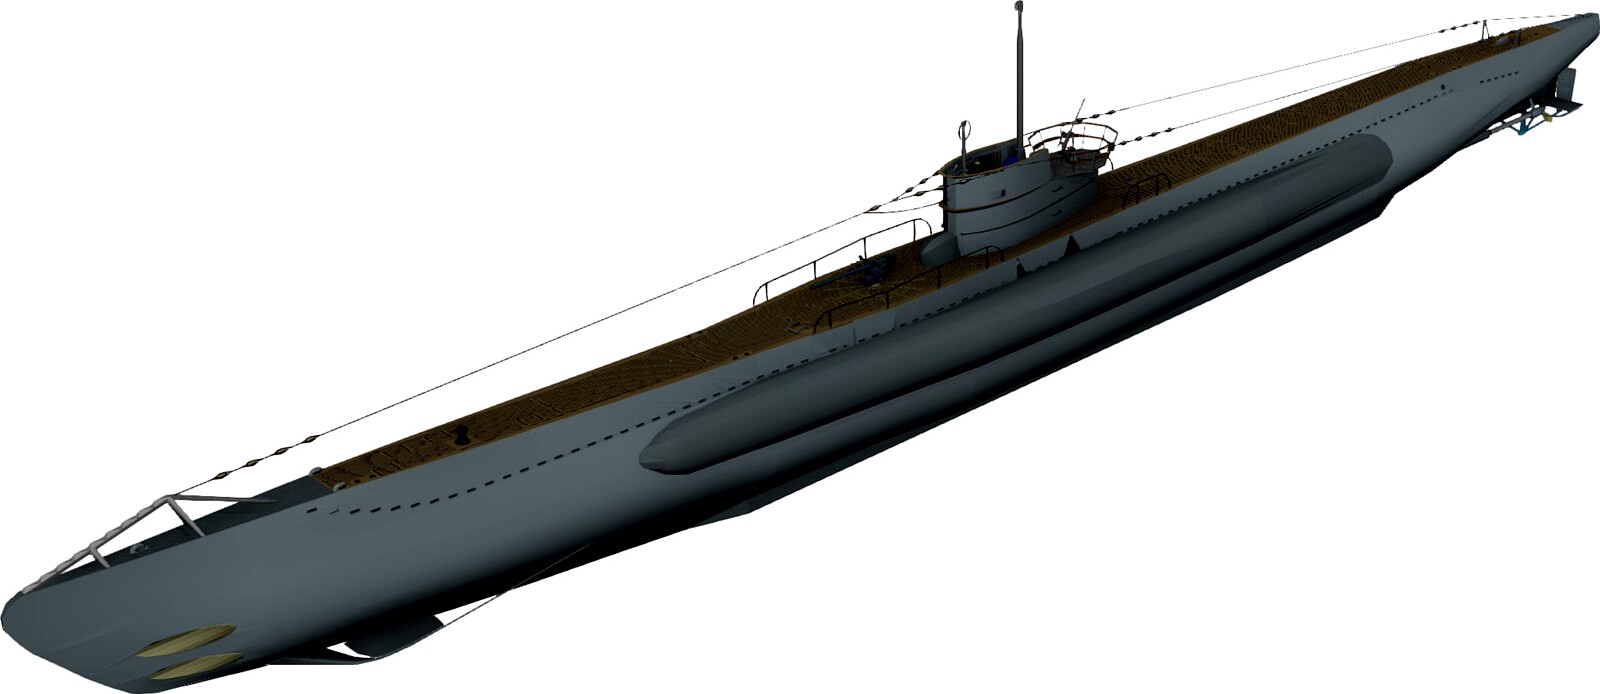 Uboat Type VII